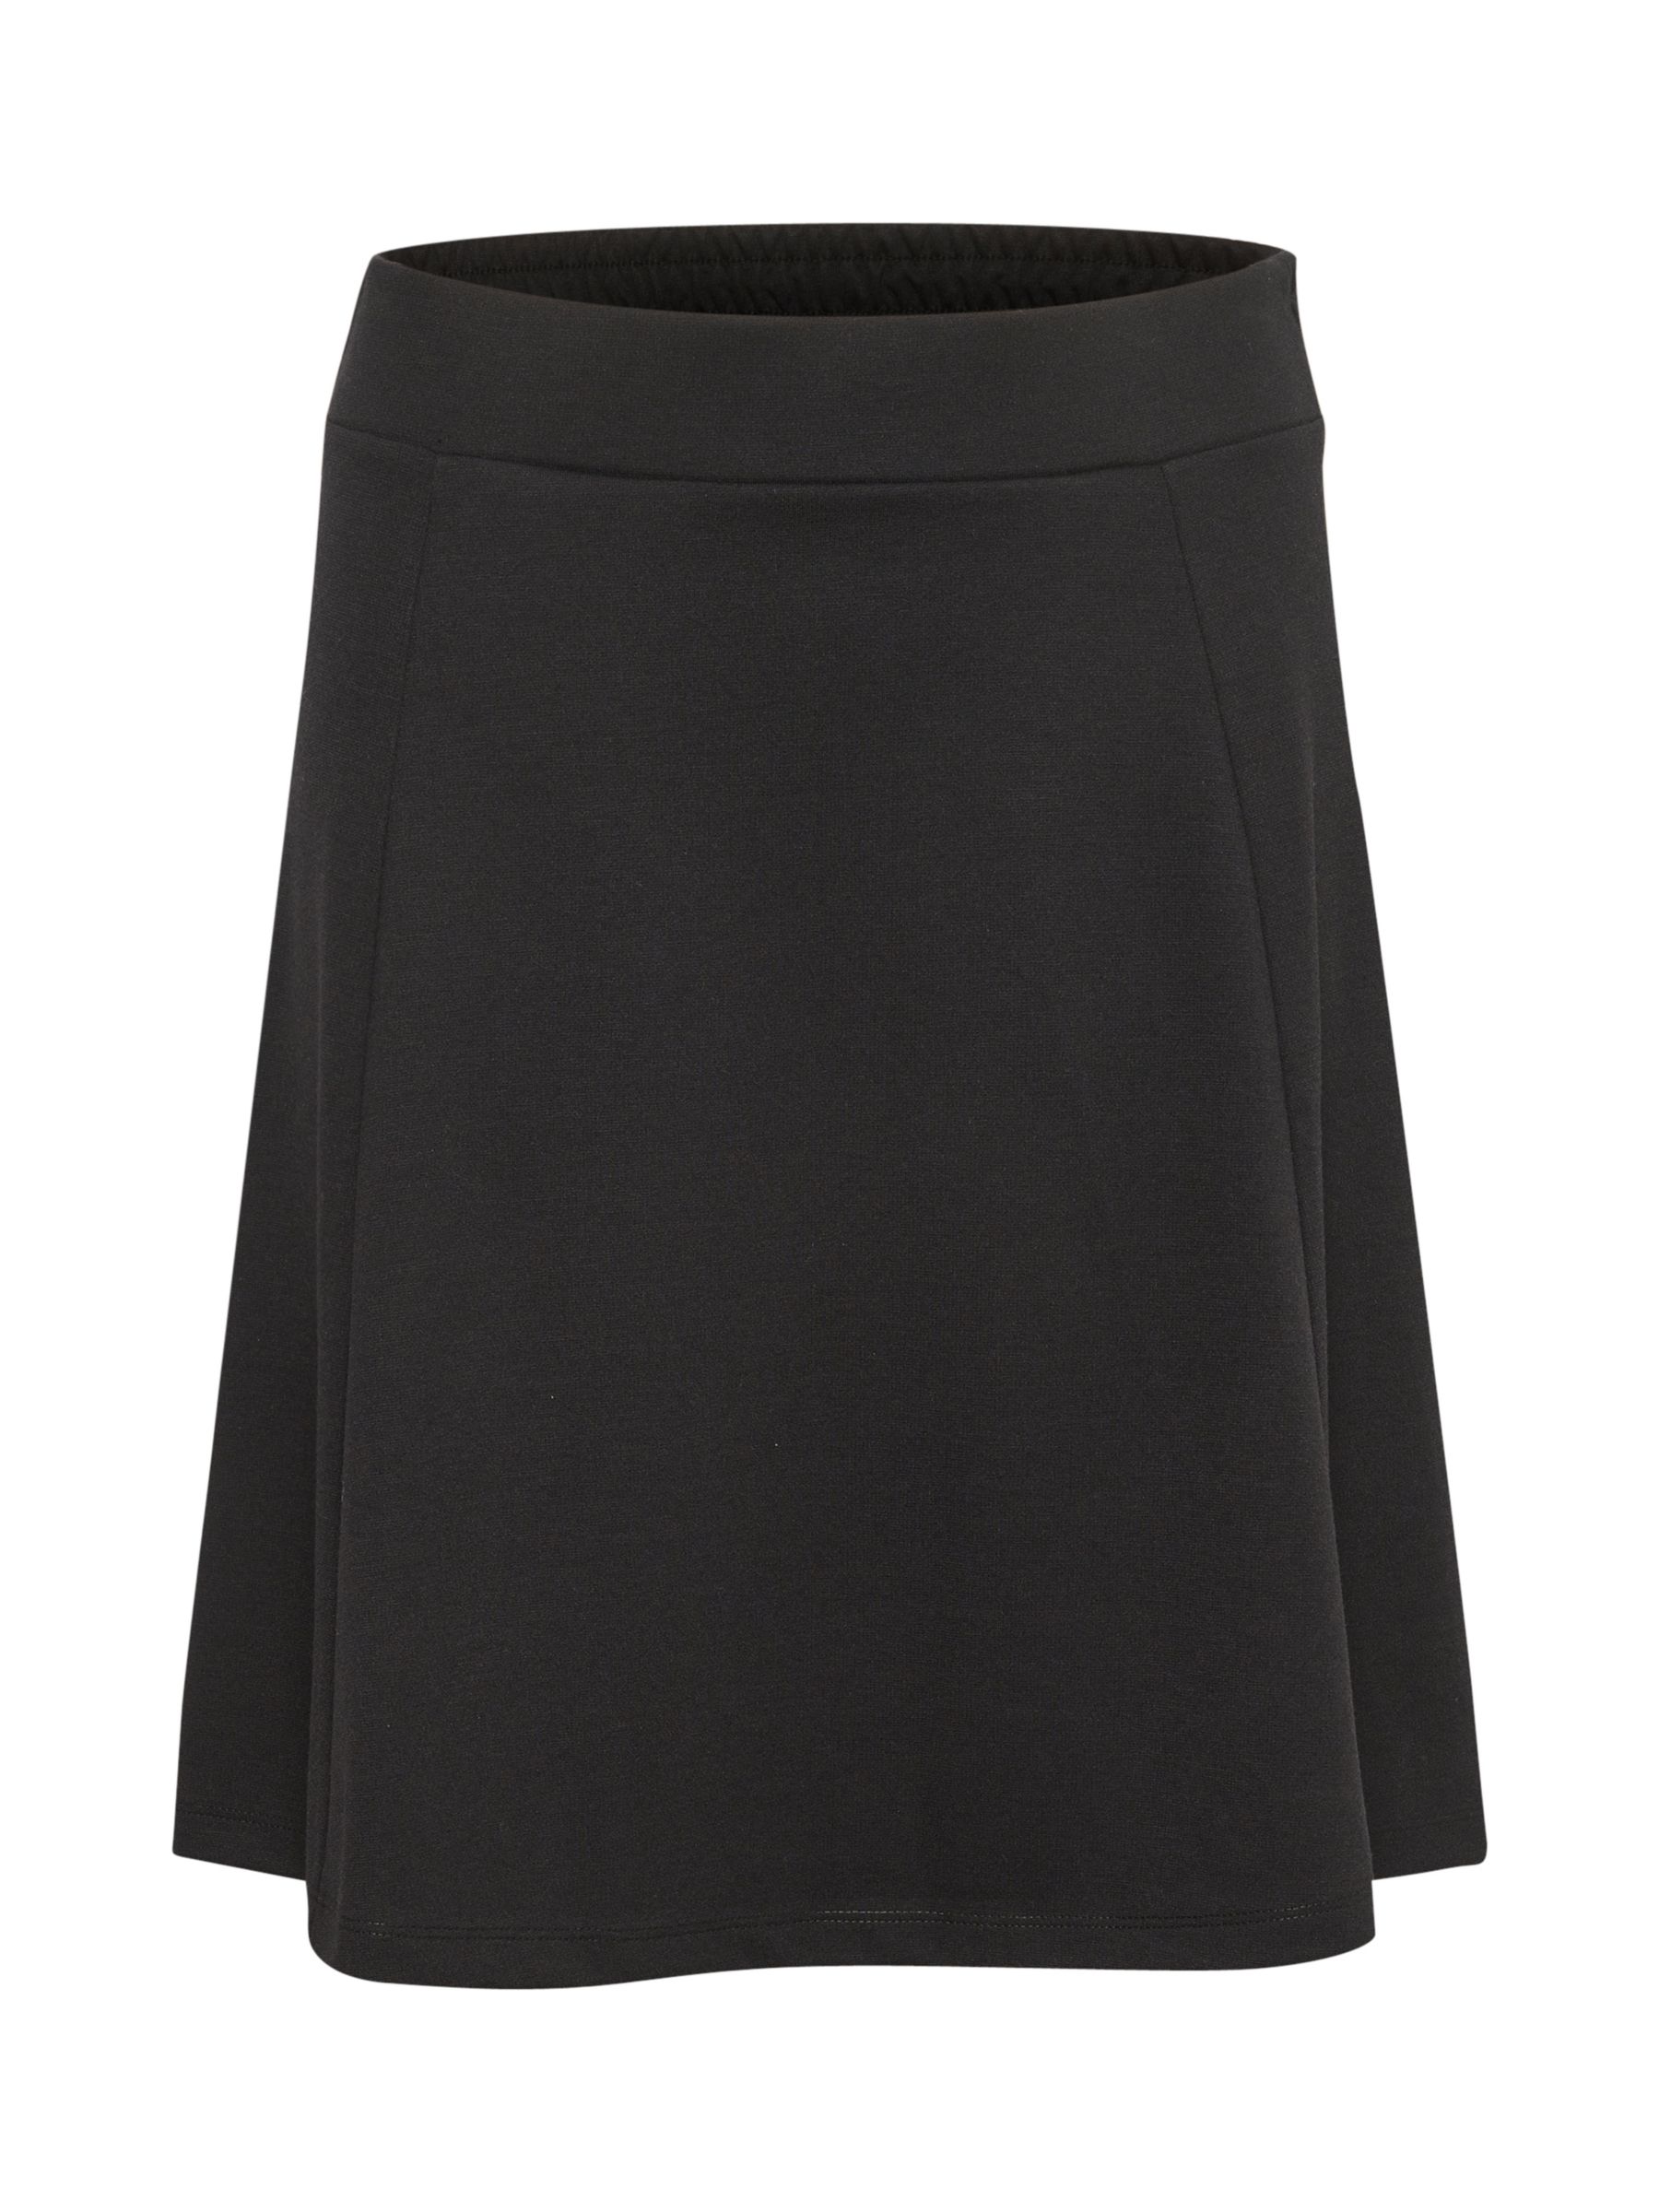 KAFFE Jolen Jersey Skirt, Black, Black at John Lewis & Partners